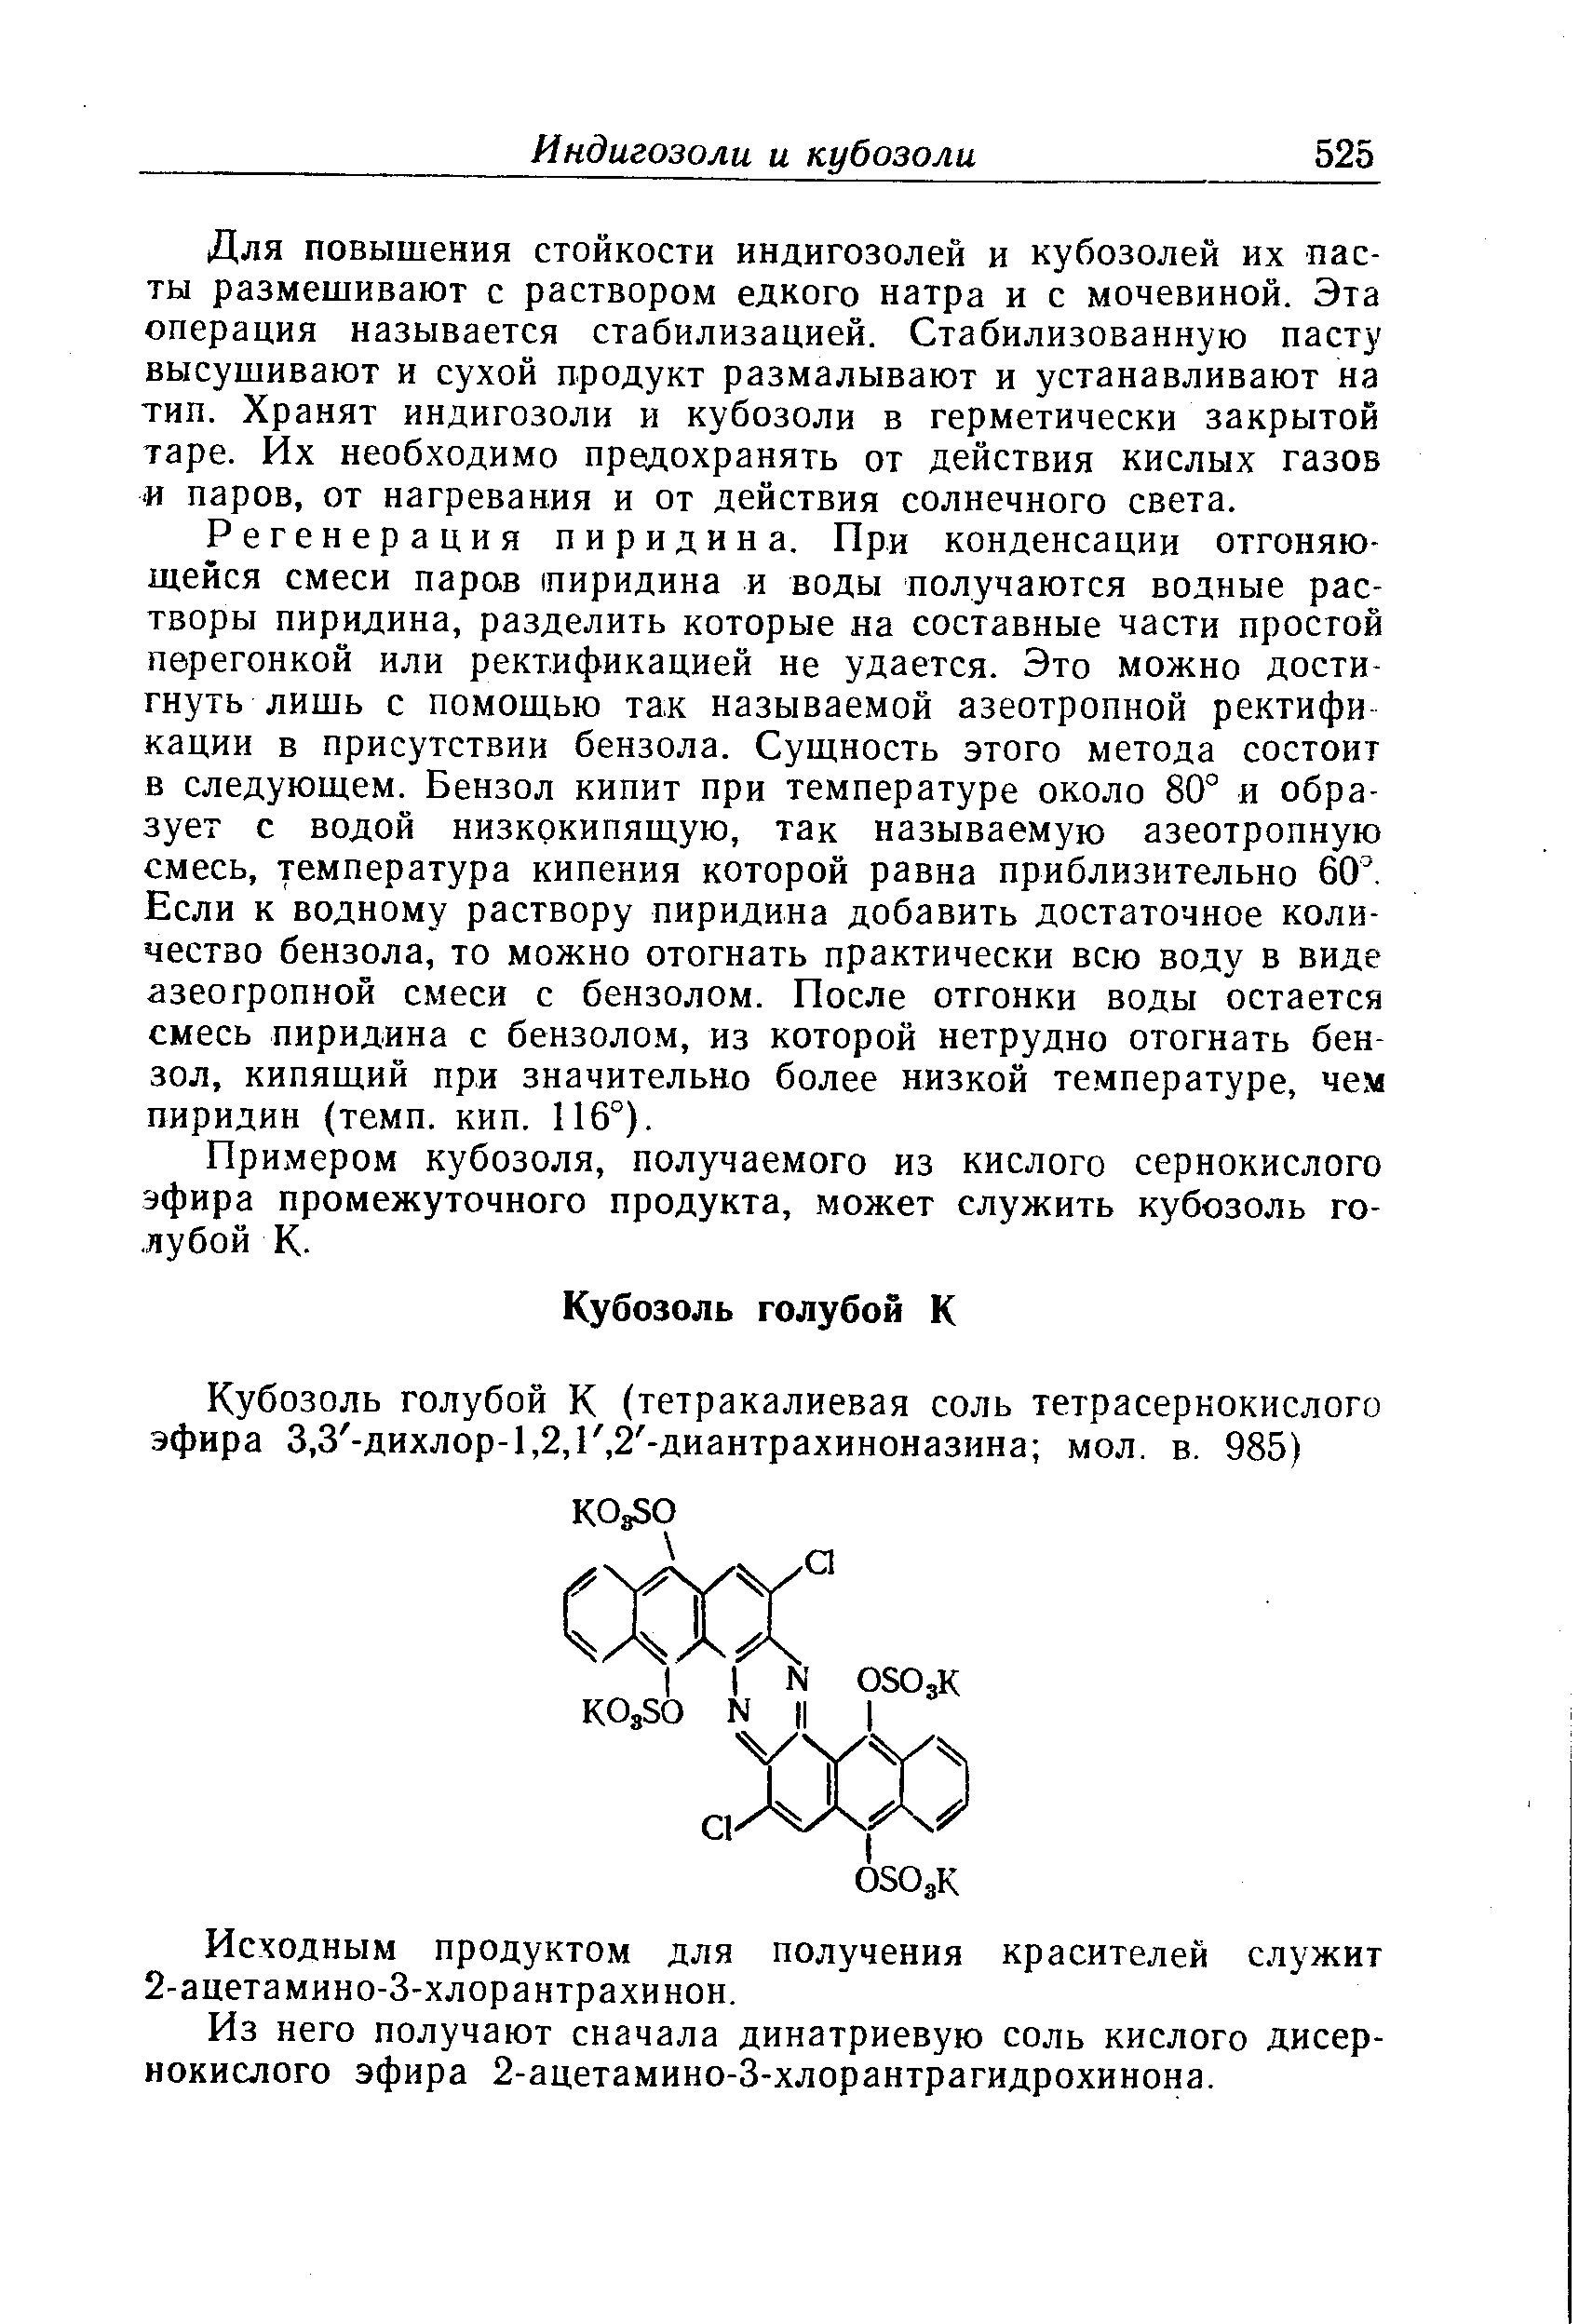 Примером кубозоля, получаемого из кислого сернокислого эфира промежуточного продукта, может служить кубозоль голубой К.